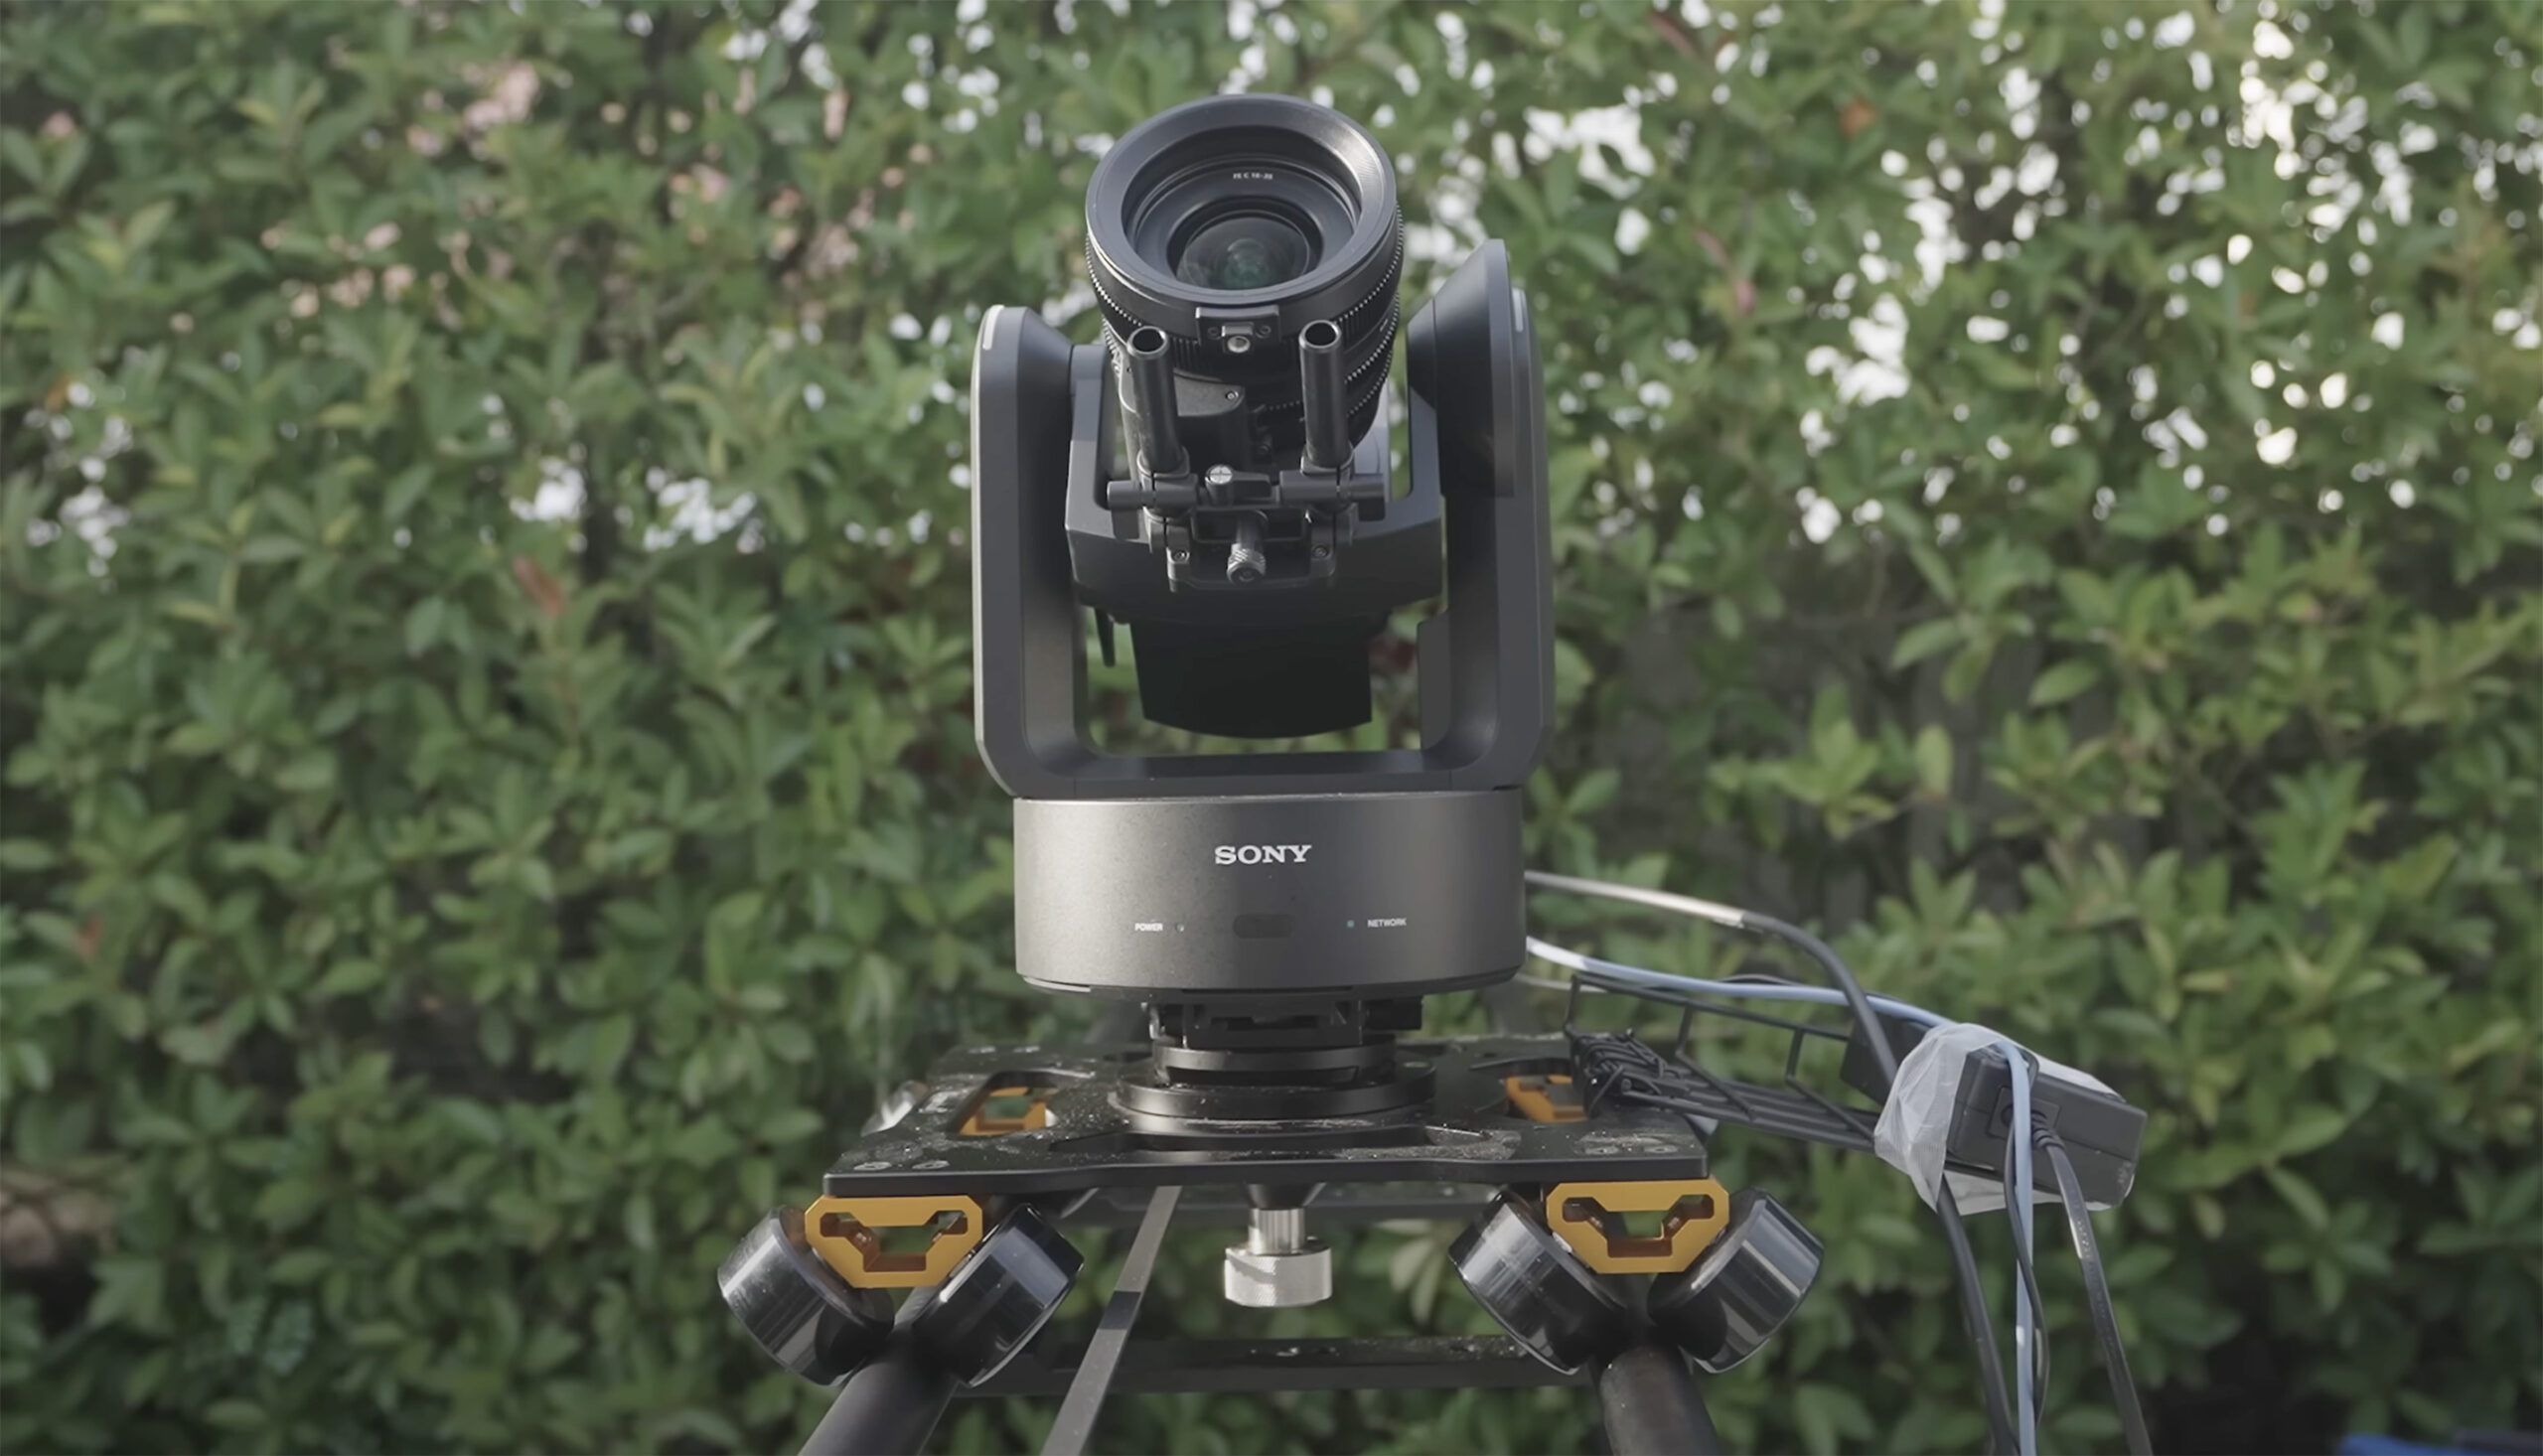 来看看索尼新推出的全画幅、可更换镜头的机器人相机